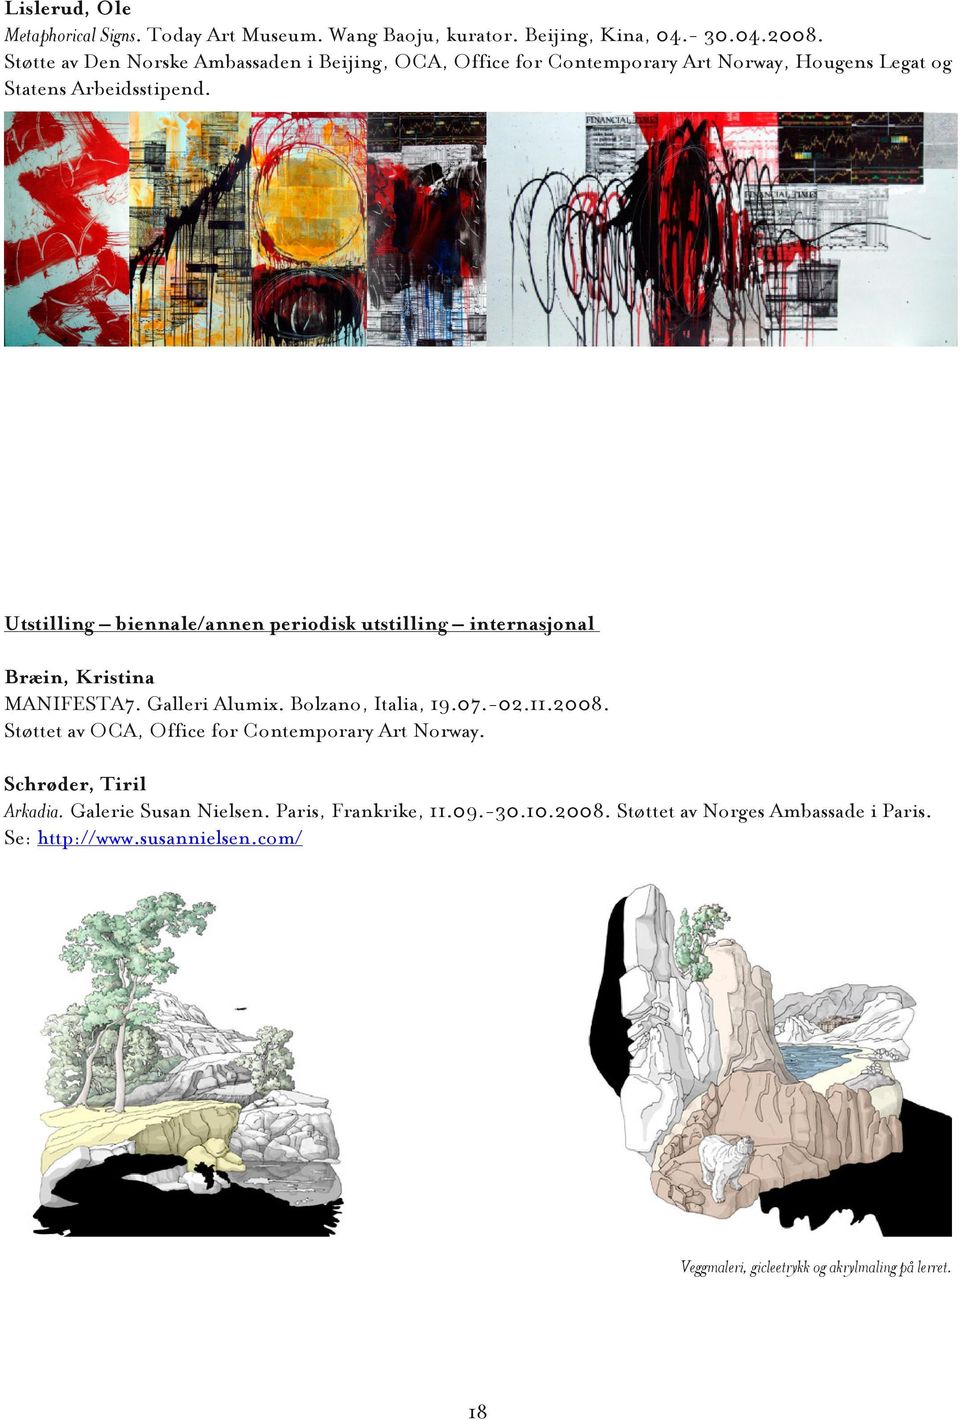 Utstilling biennale/annen periodisk utstilling internasjonal Bræin, Kristina MANIFESTA7. Galleri Alumix. Bolzano, Italia, 19.07.-02.11.2008.